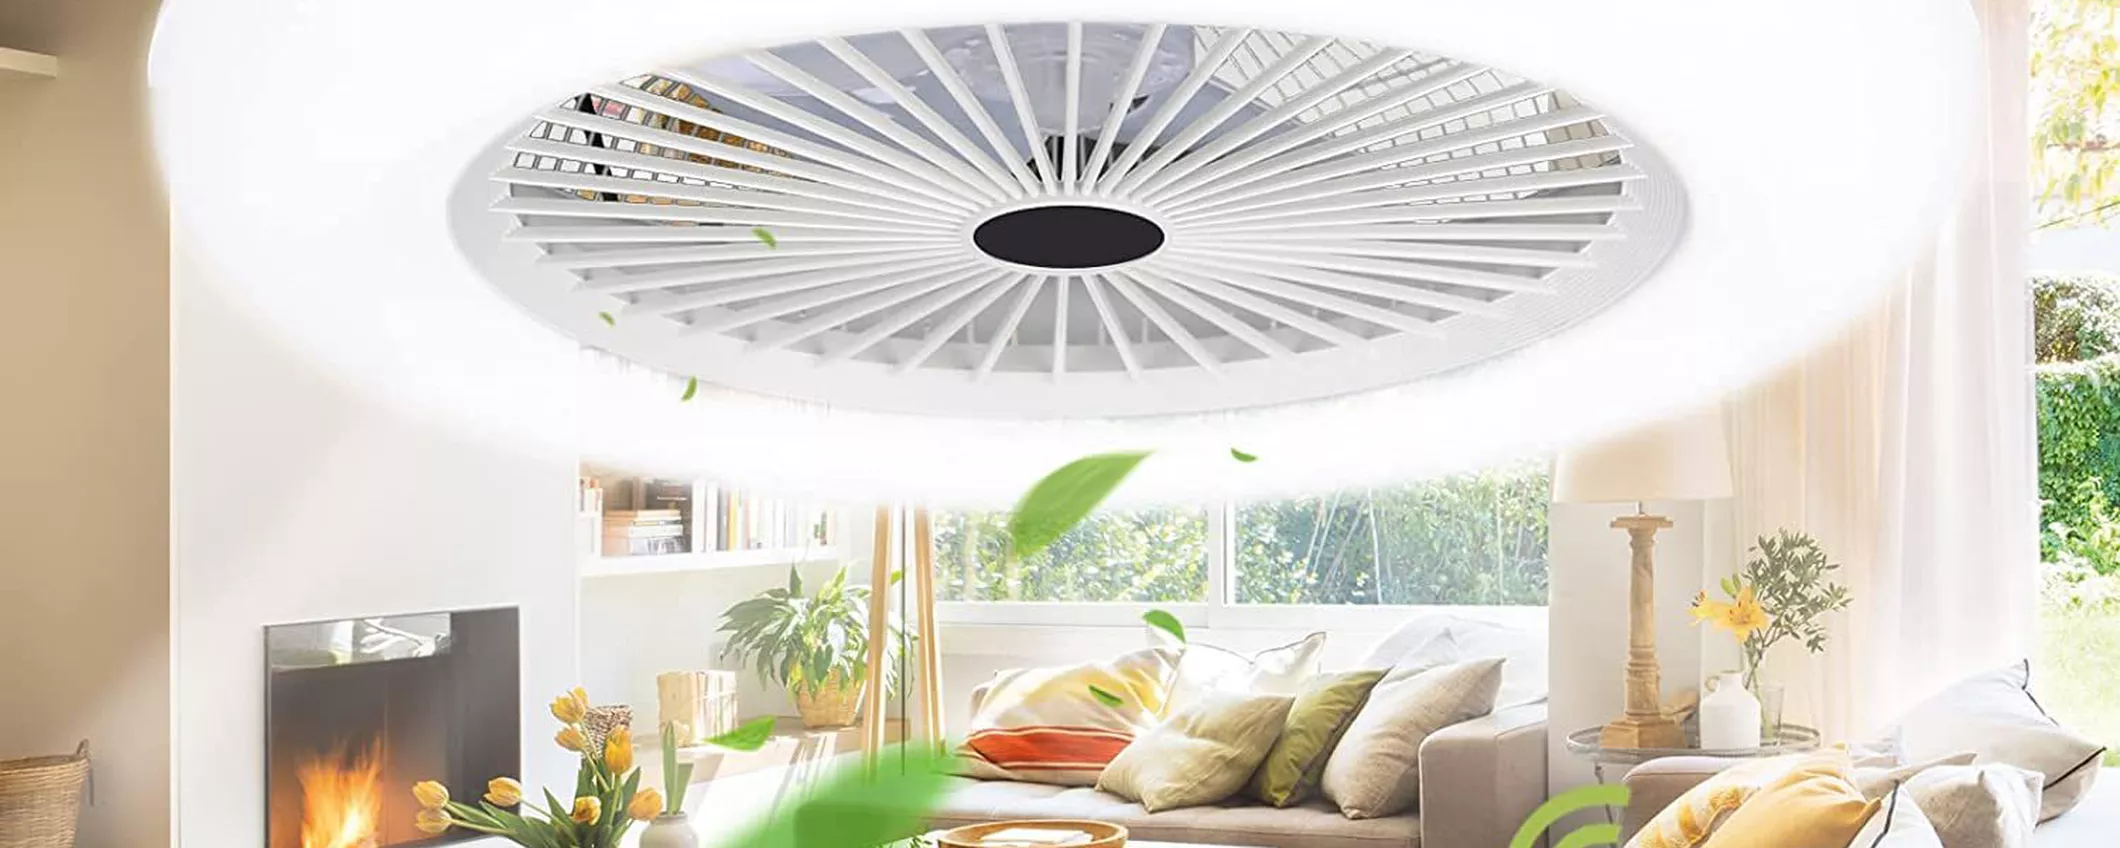 Il gadget dell'Estate: lampada LED ventilatore da soffitto, GENIALATA